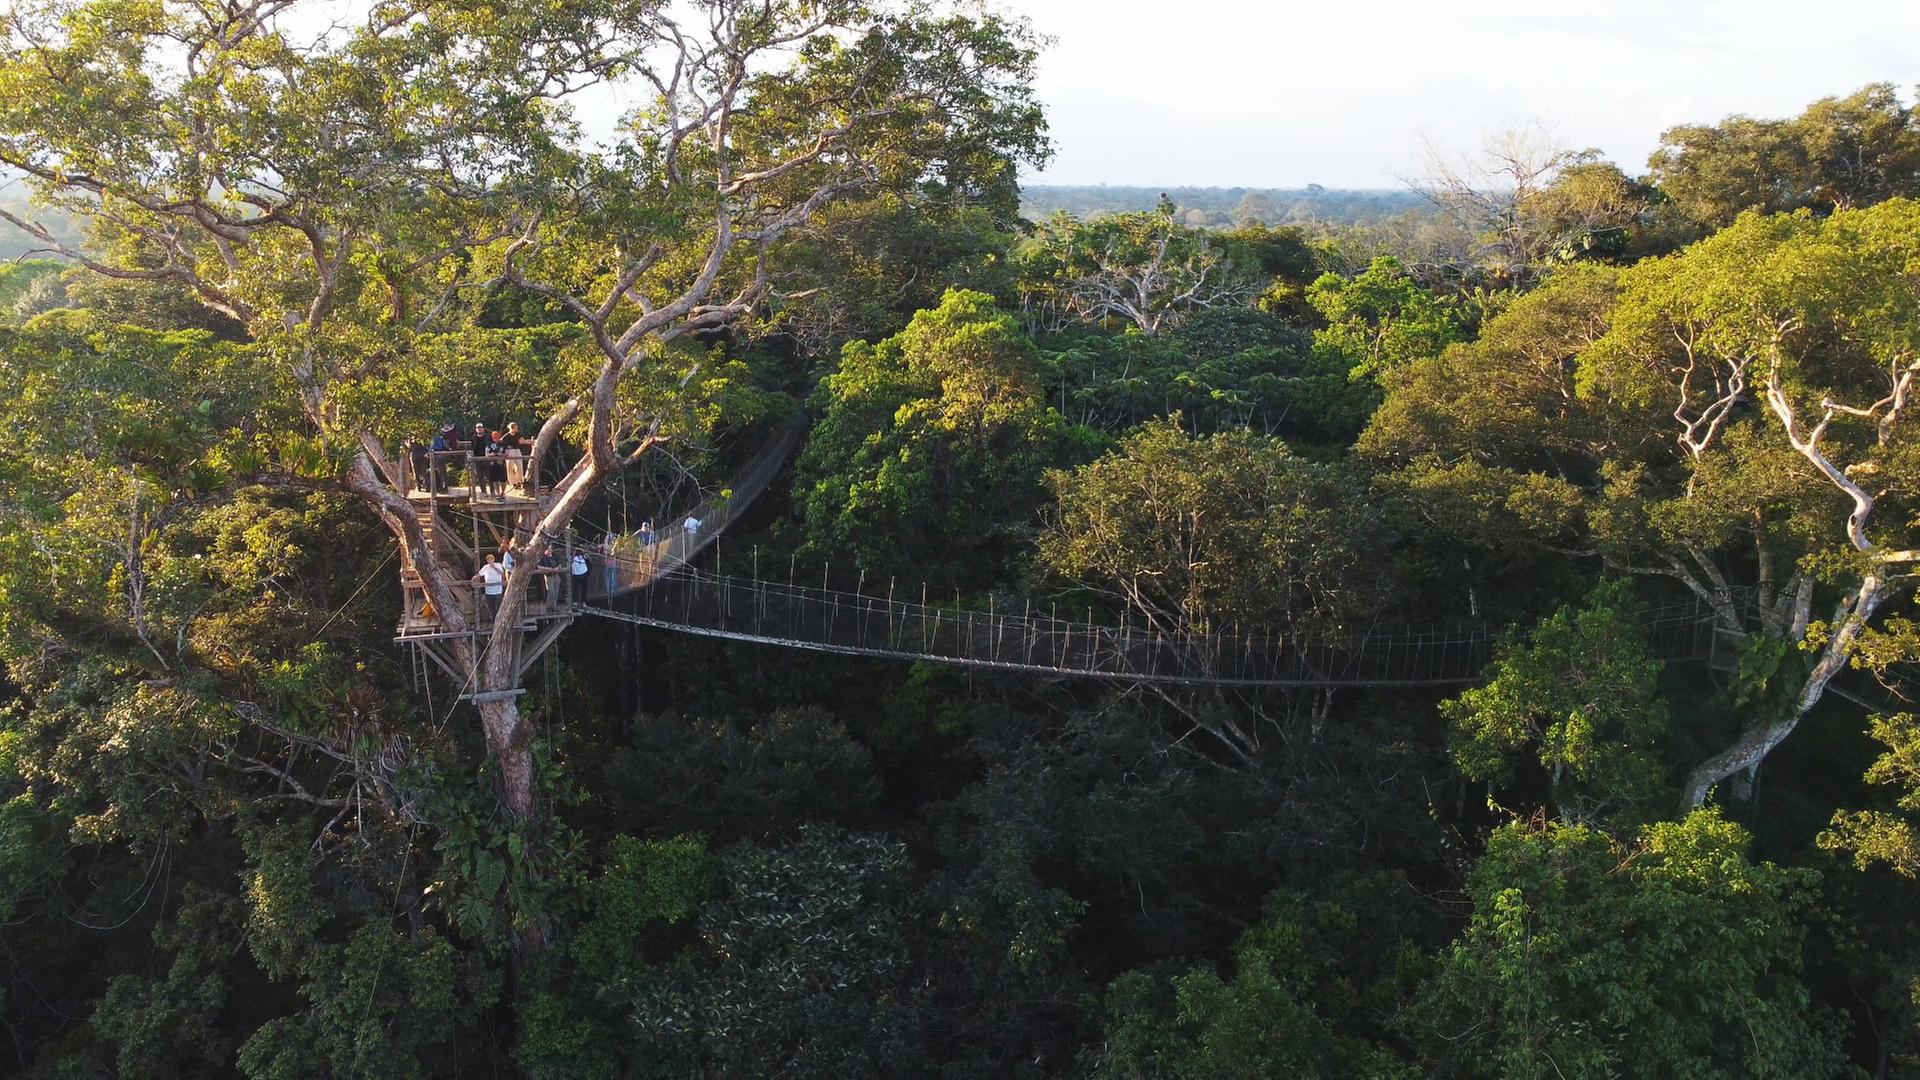 Seit den 1990er Jahren können Touristen das Kronendach des Amazonas auf dem Baumwipfelpfad hautnah erleben.